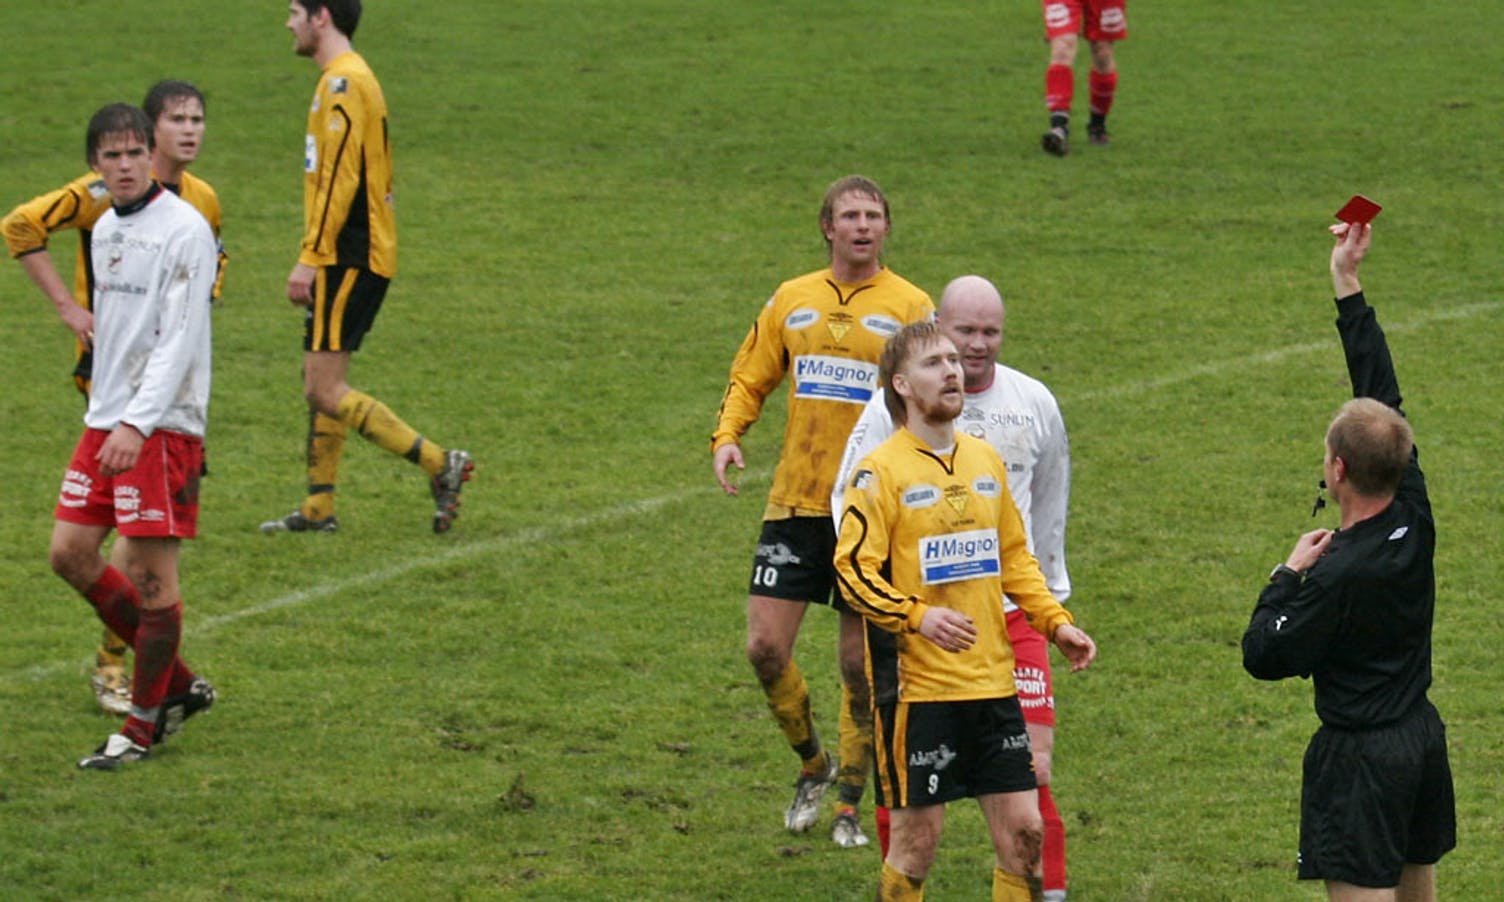 Opprykkskampen mot Hovding i 2006. Håland er også god i kroppsspråk. (Foto: KVB)